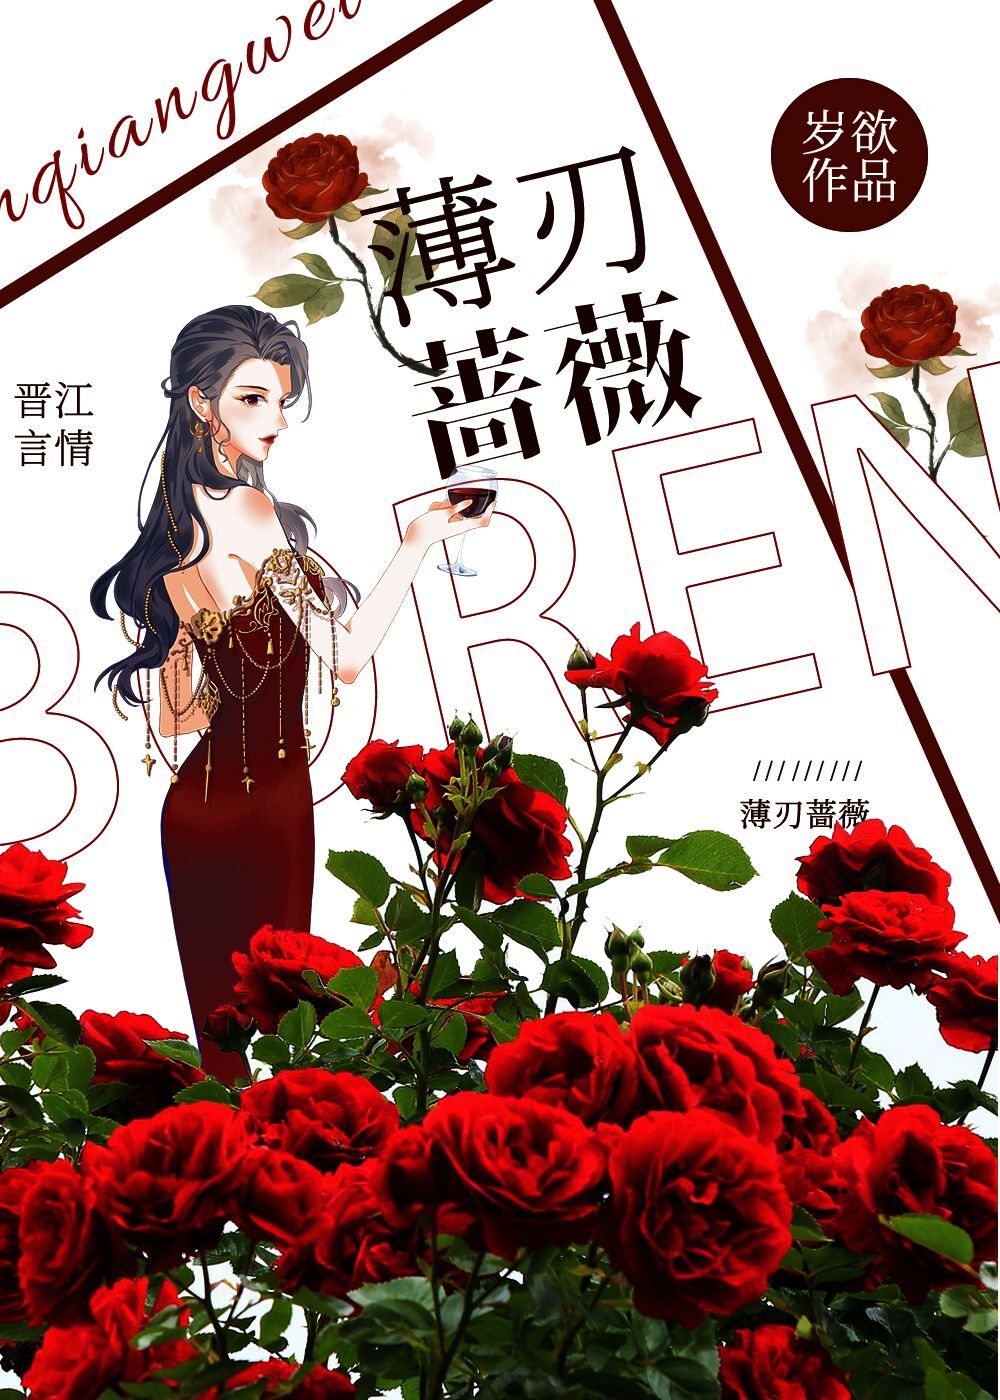 薄刃蔷薇只能在晋江文学城看吗